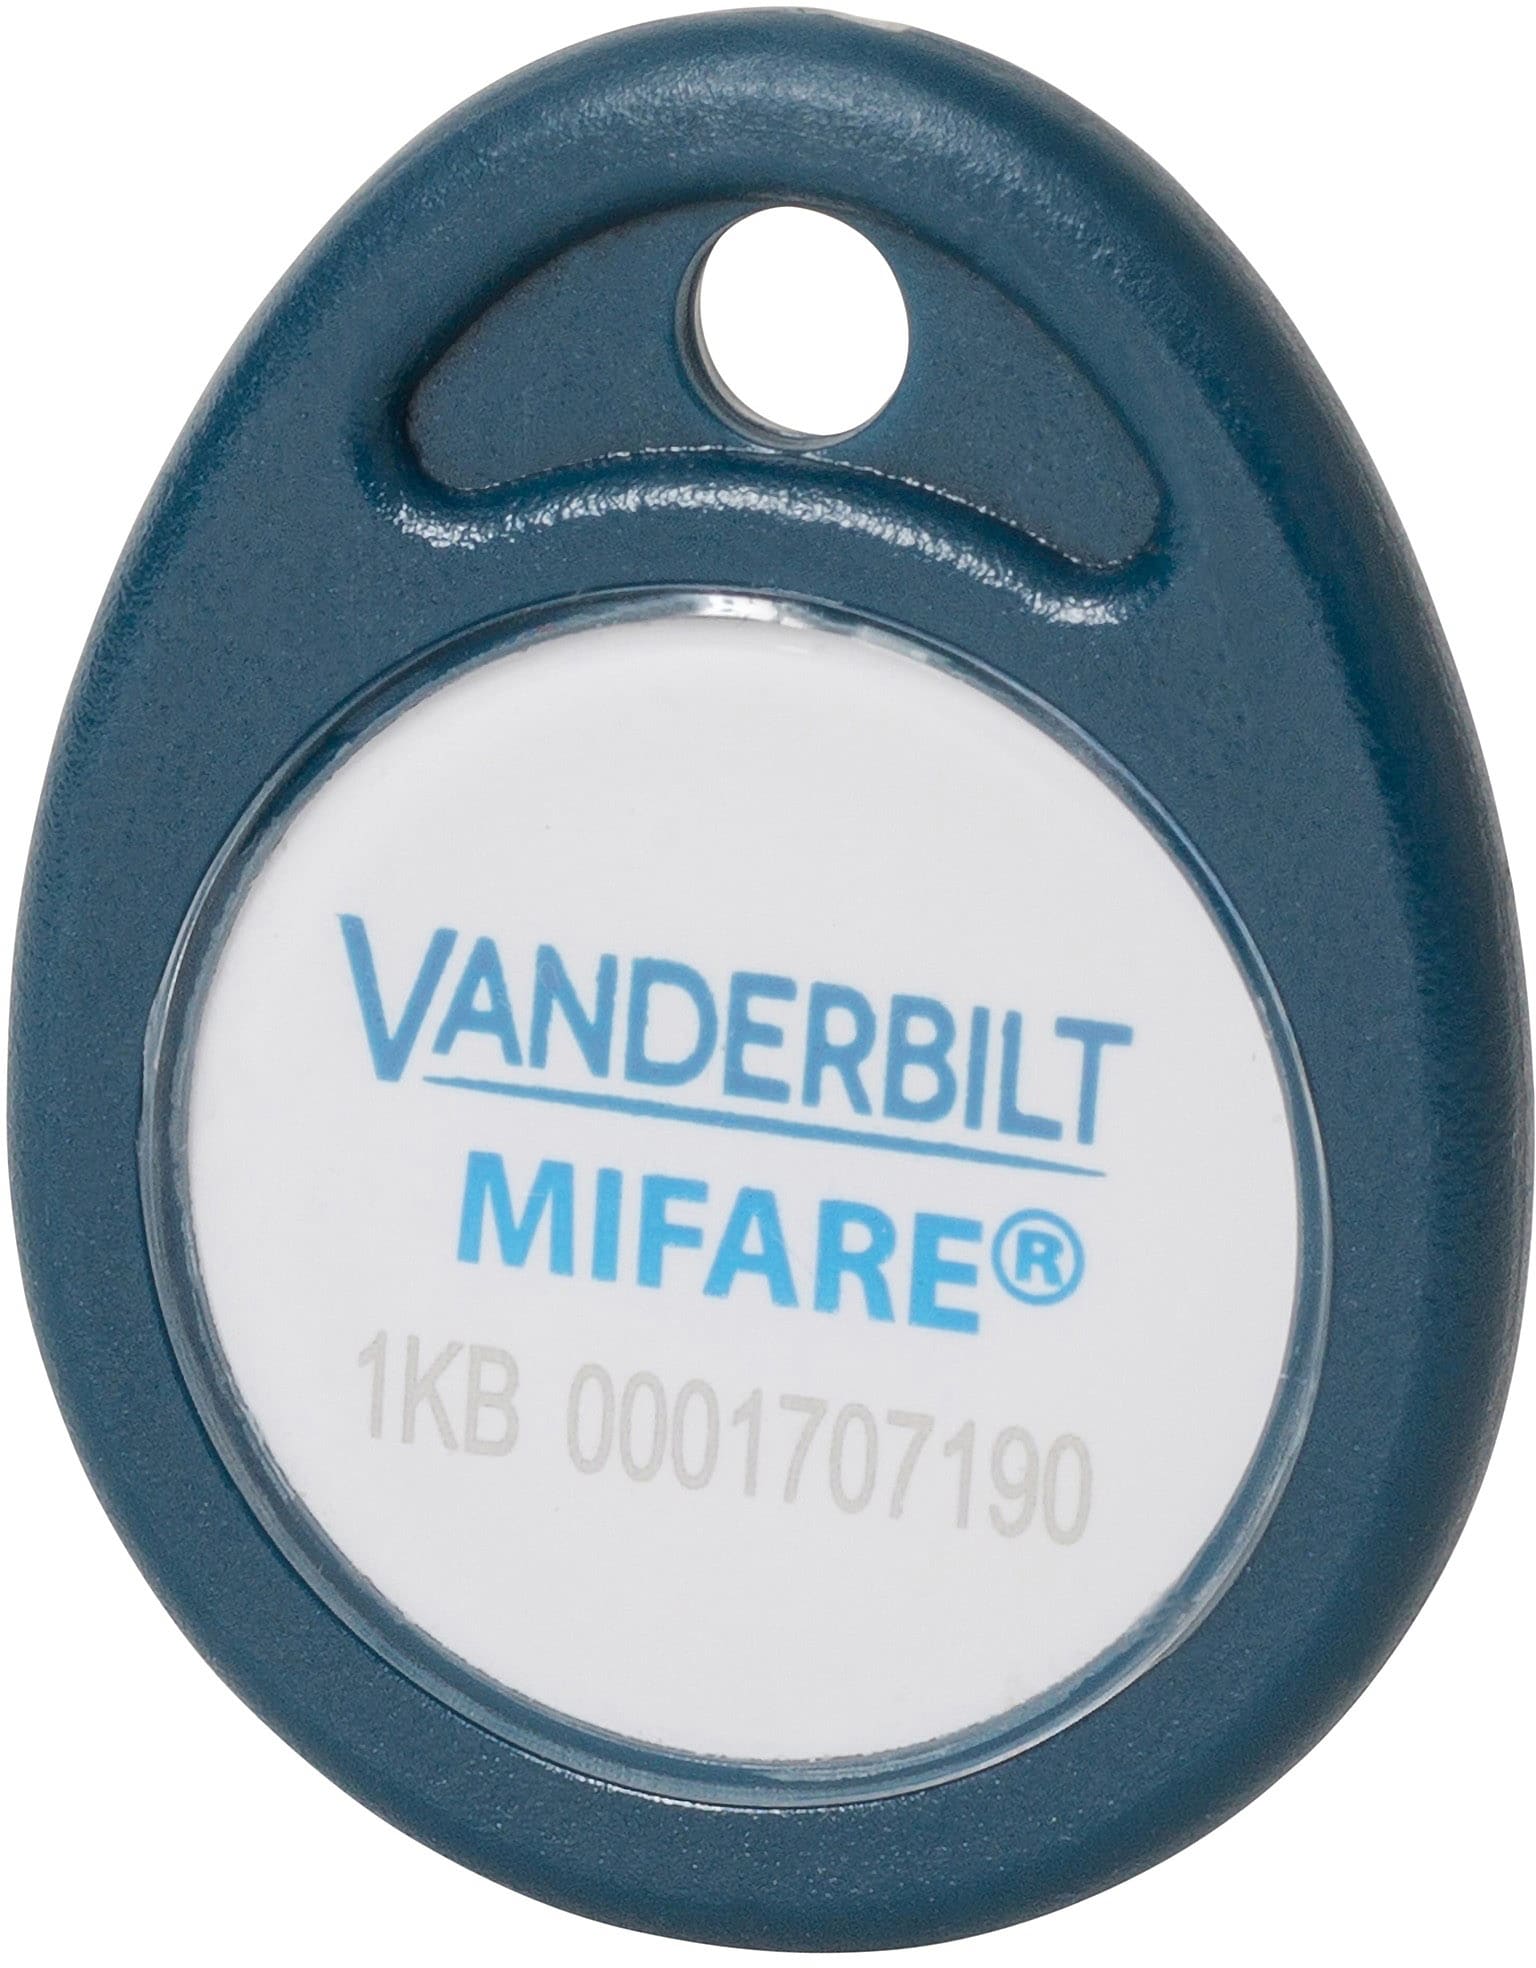 VANDERBILT INTERNATIONAL - ACTpro Portecle MIFARE, numero de badge grave memorise dans le secteur 1 lis